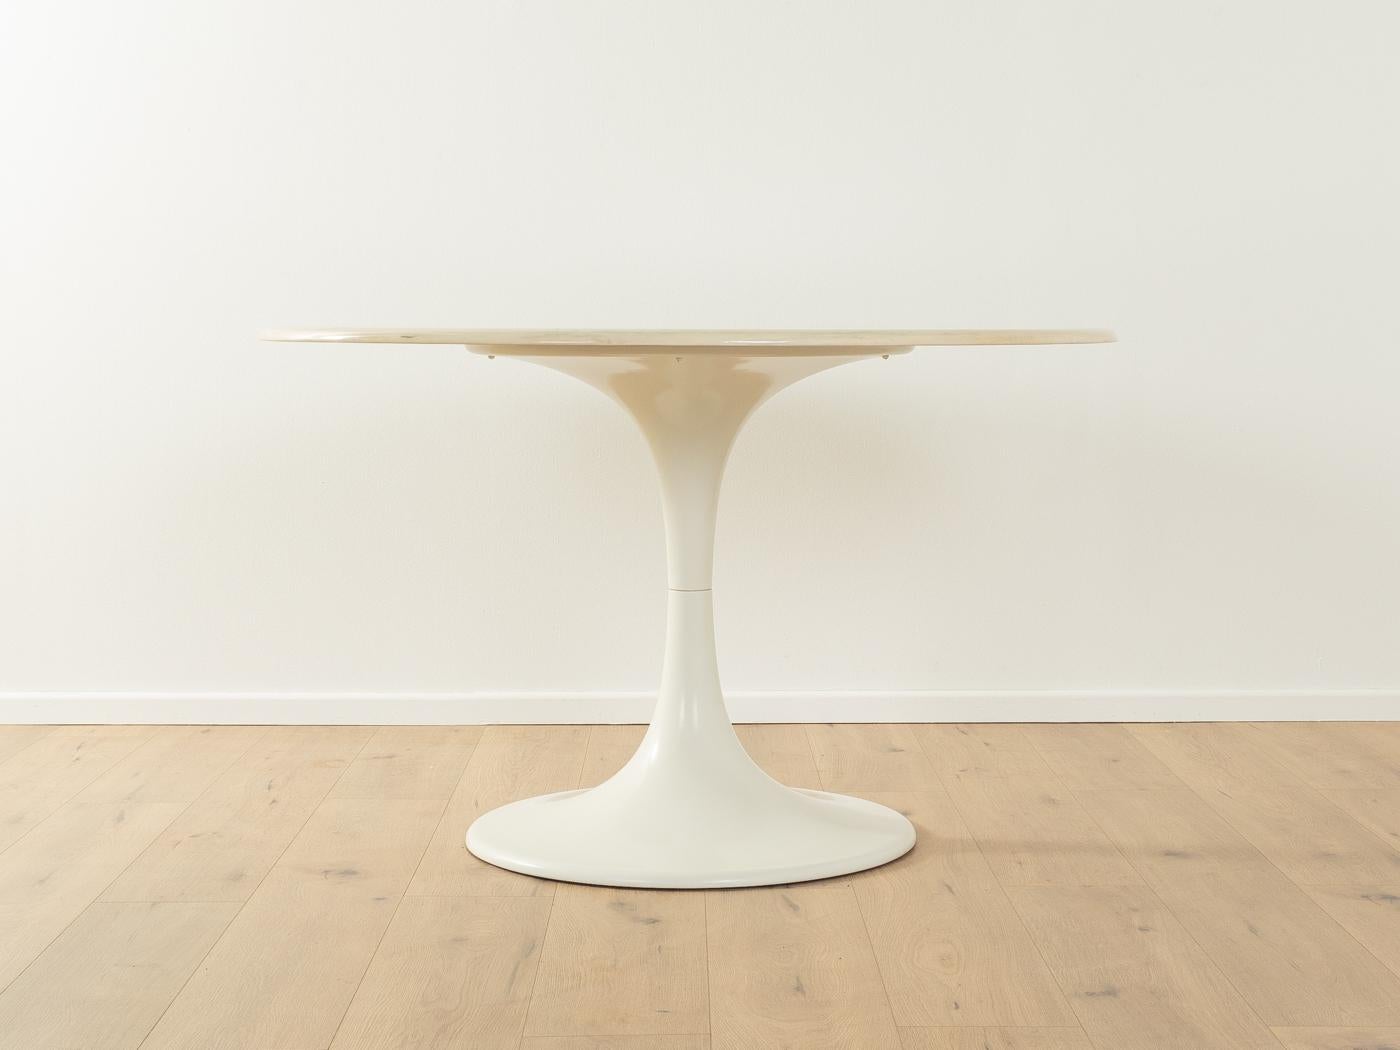 Table de salle à manger Tulip unique des années 1960. Plateau de table en marbre blanc crème avec une base en aluminium blanc.

Caractéristiques de qualité :
    Un design abouti : des proportions parfaites et un souci du détail évident.
    une